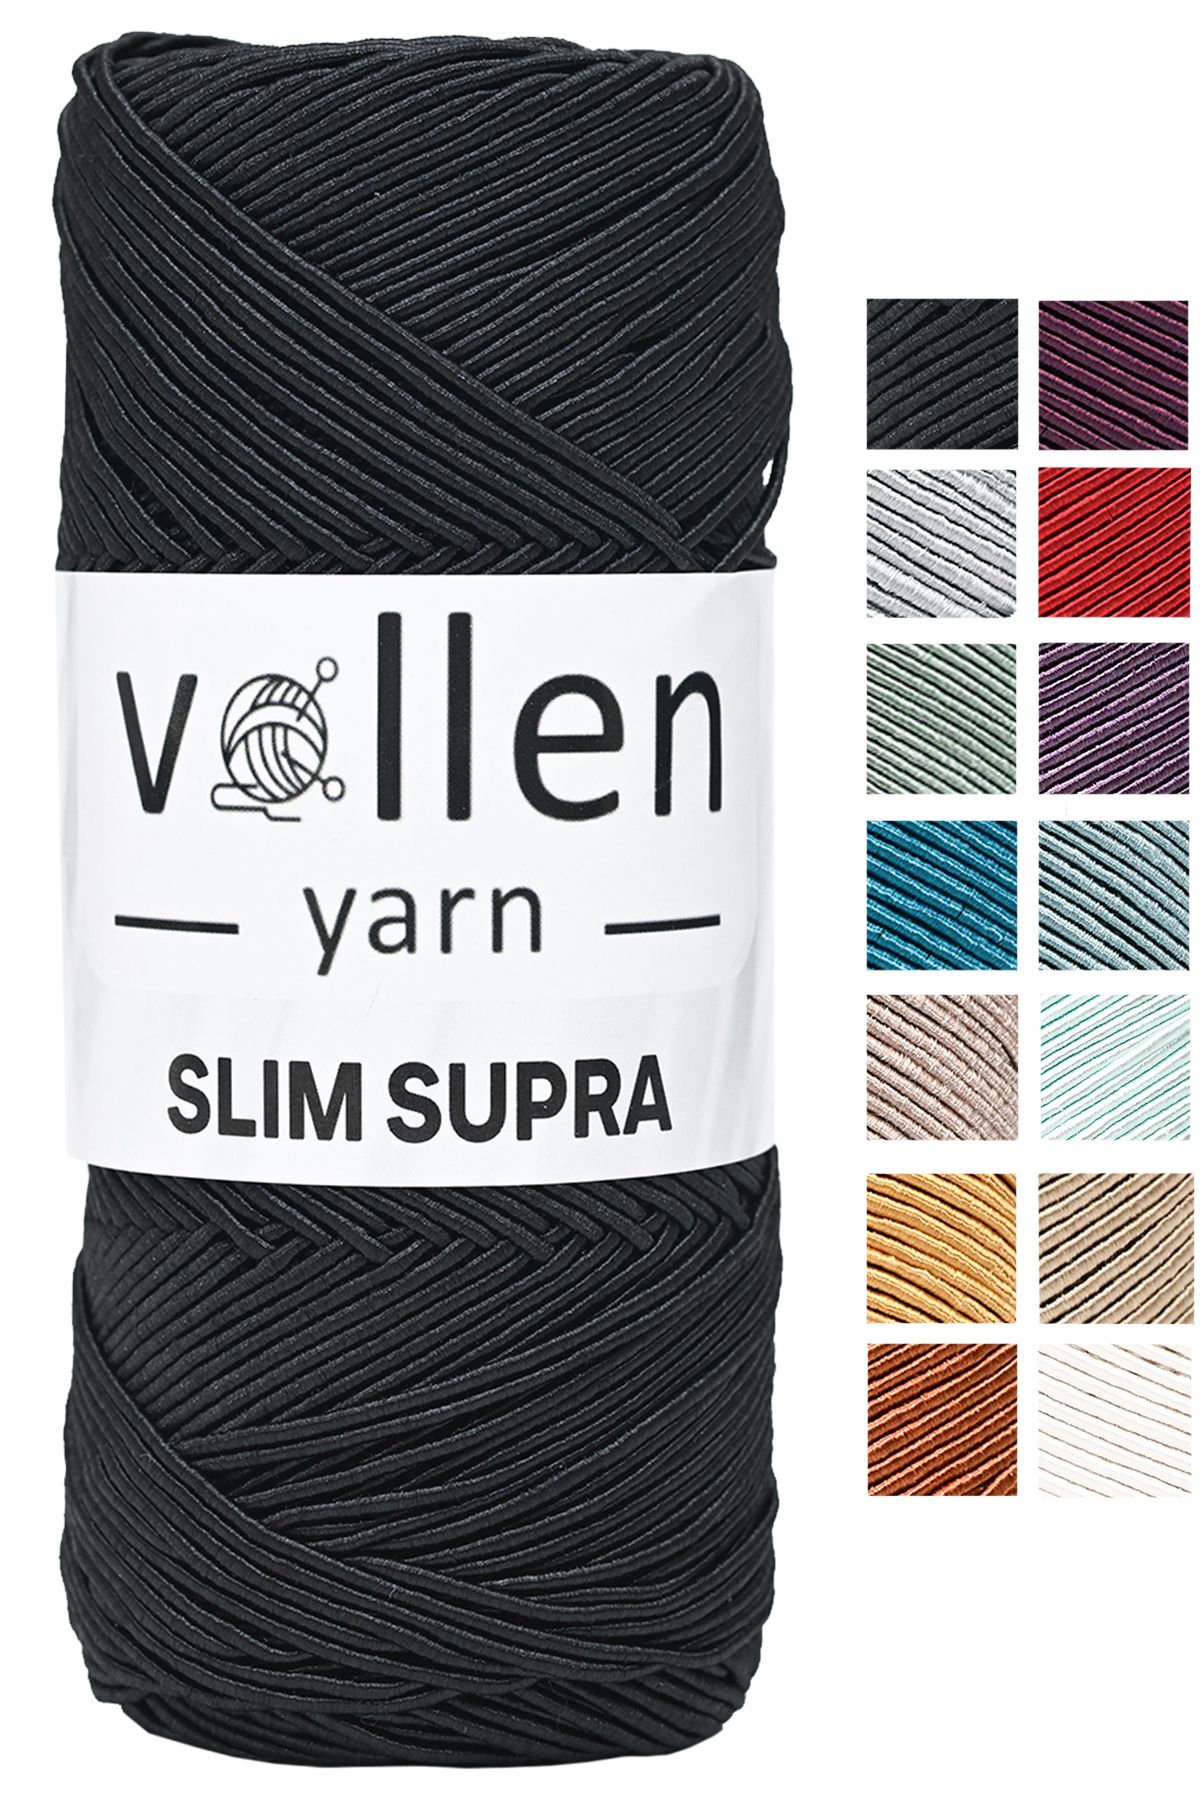 vollen yarn Slim Supra 200 Gr, Mumlu Ip,polyester Ip,runner Ipi, Çanta Ipi, Bileklik Ipi,pase Ip Siyah